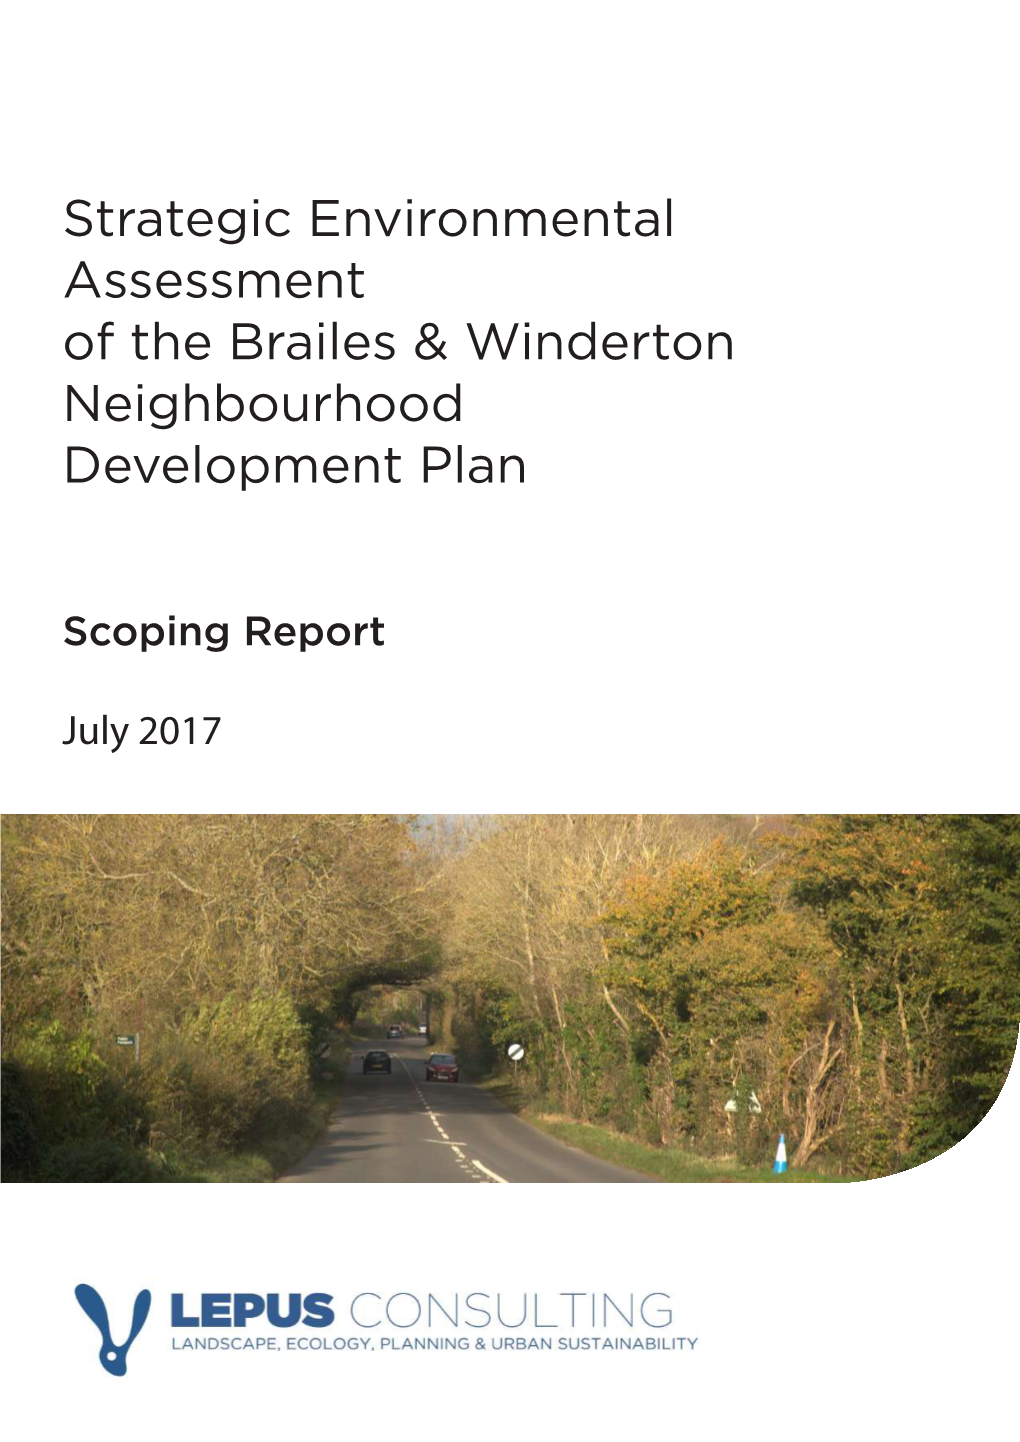 Strategic Environmental Assessment of the Brailes & Winderton Neighbourhood Development Plan